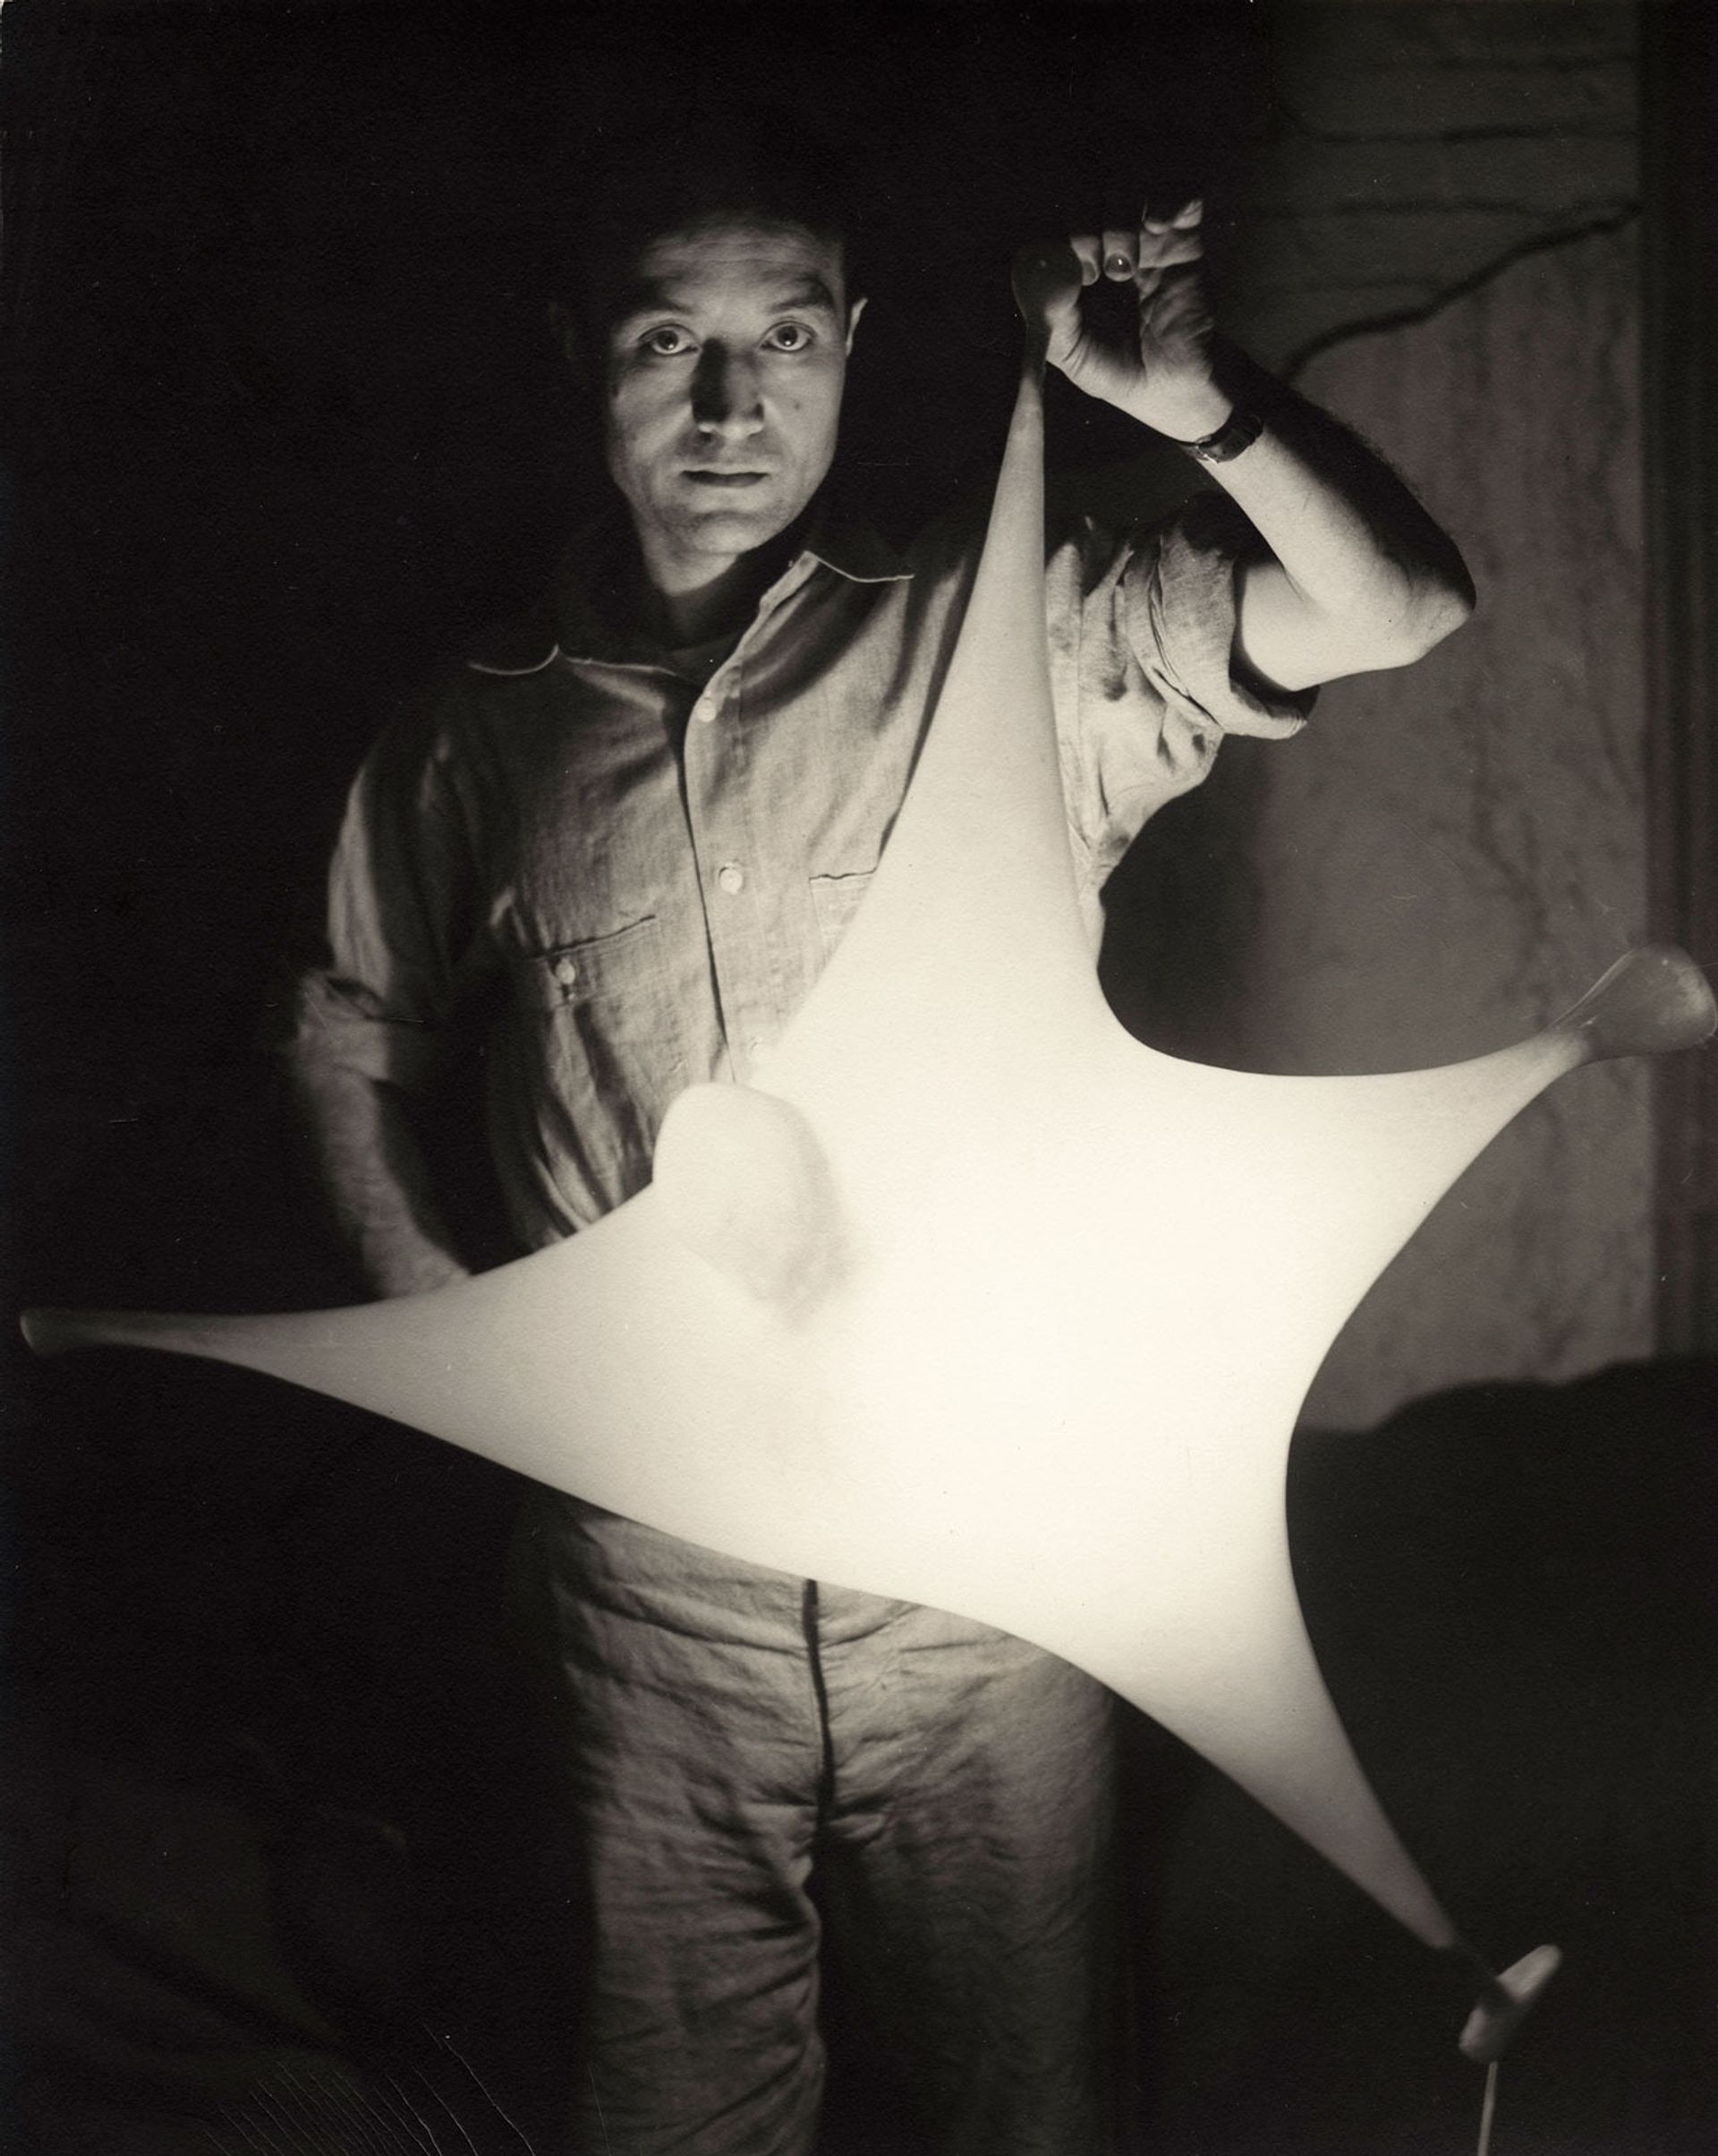 Isamu Noguchi with study for Luminous Plastic Sculpture (1943)
Photograph by Eliot Elisofon; The Noguchi Museum Archives, ©INFGM / ARS DACS / Eliot Elisofon